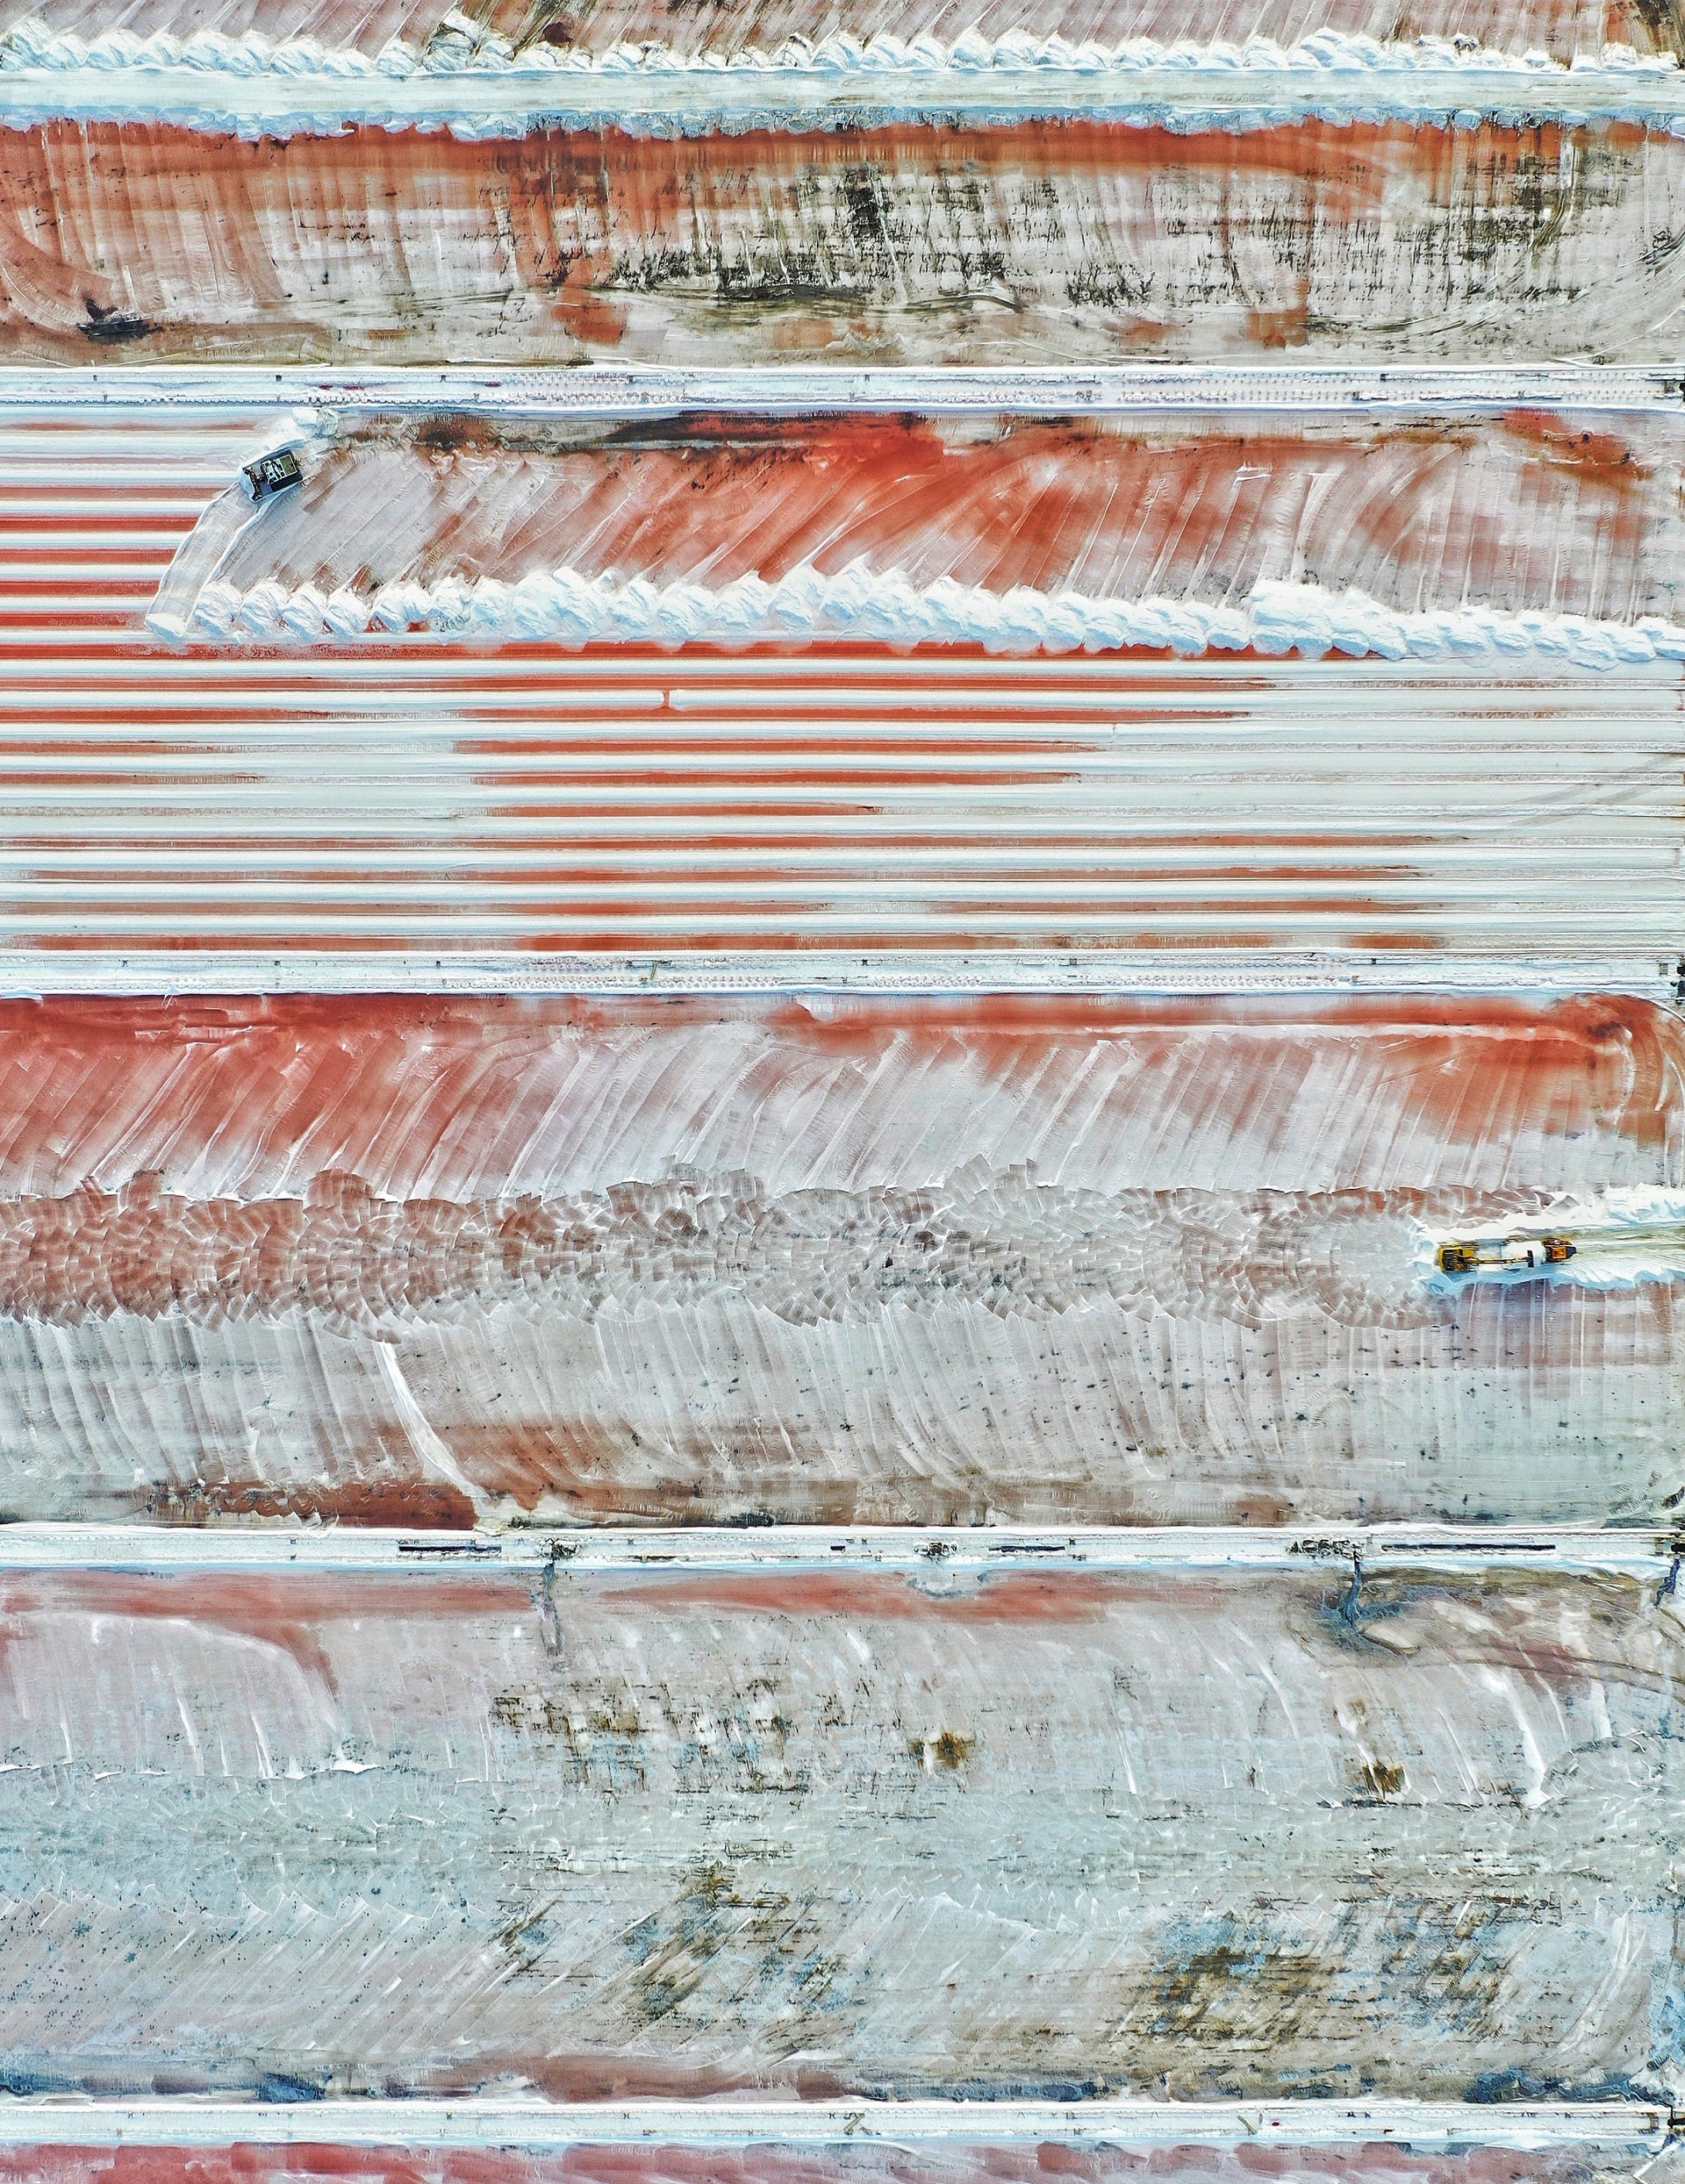 Победитель в категории Пейзажная фотография года, 2019. Урожай дорожной соли, Грюиссан, Франция. Автор Магали Чеснель